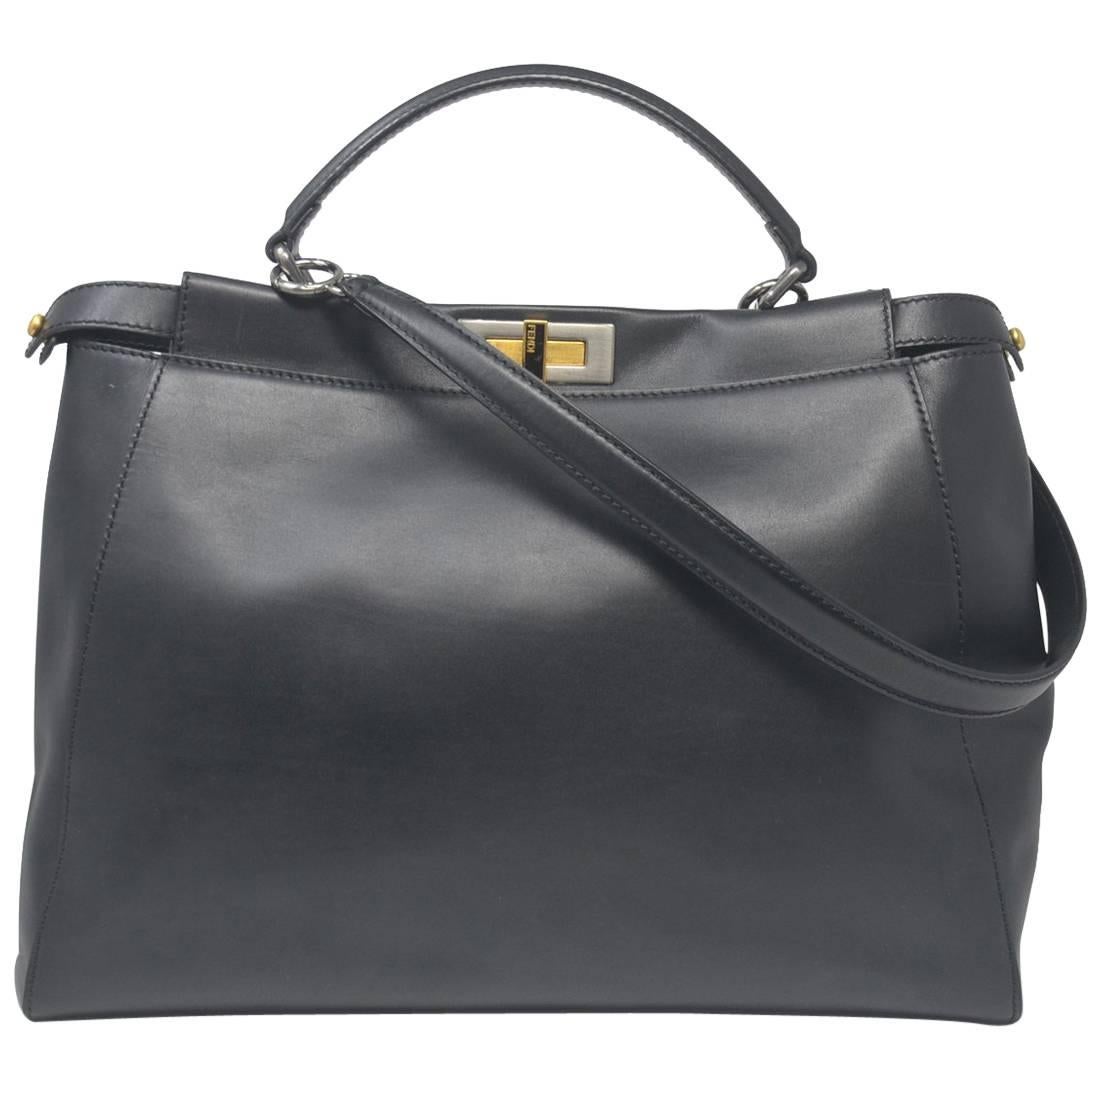 Fendi Large Peekaboo Black leather Handbag